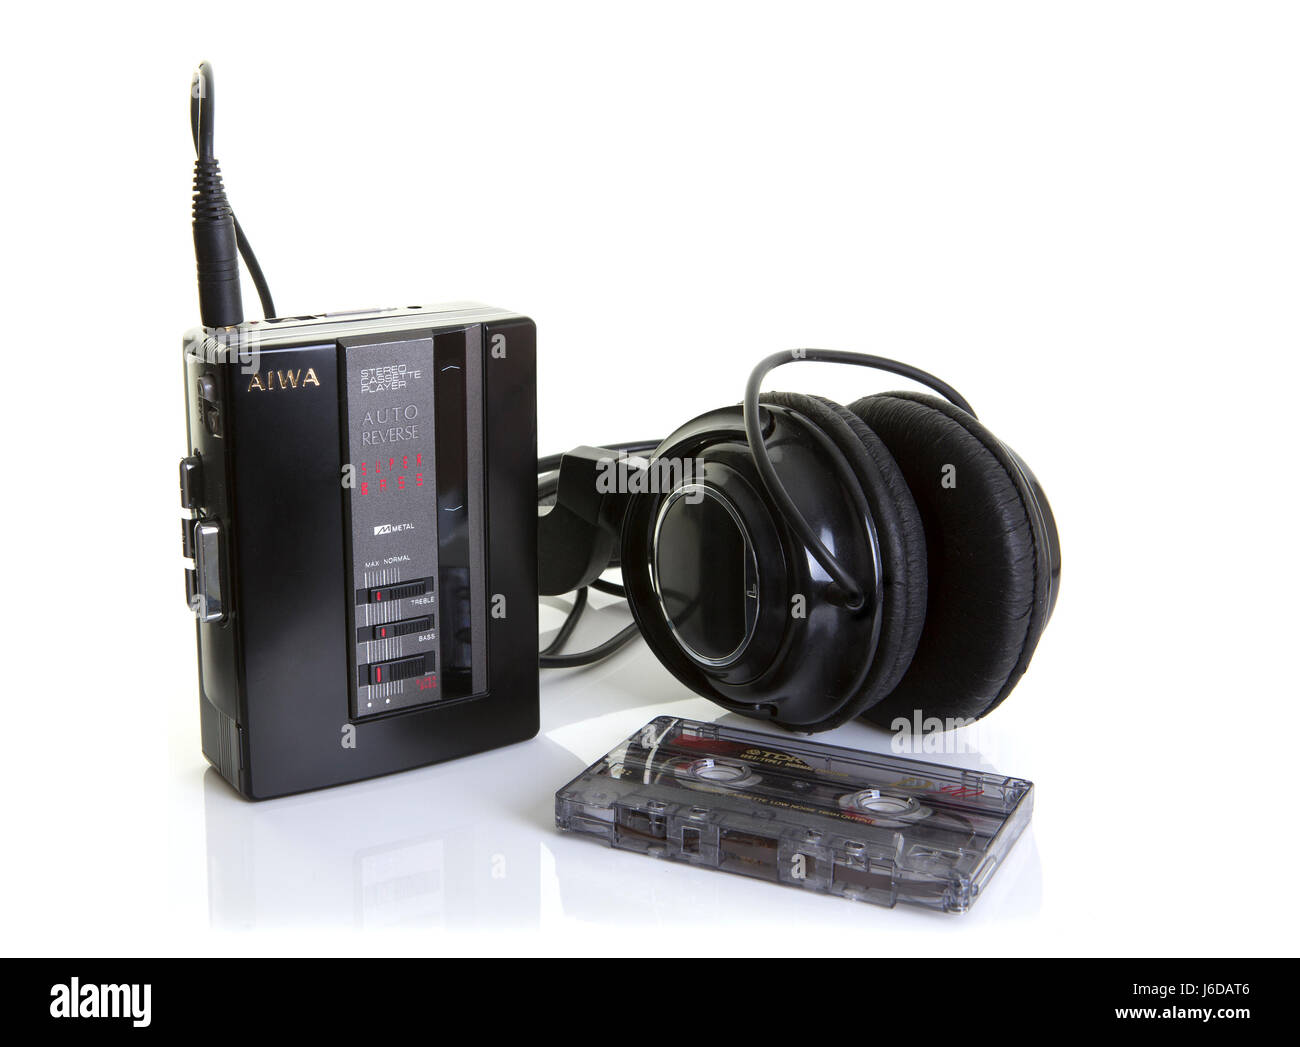 SWINDON, Regno Unito - 20 Maggio 2017: AIWA Autoreverse Cassette Stereo con lettore di nastro vecchio e cuffie su sfondo bianco Foto Stock